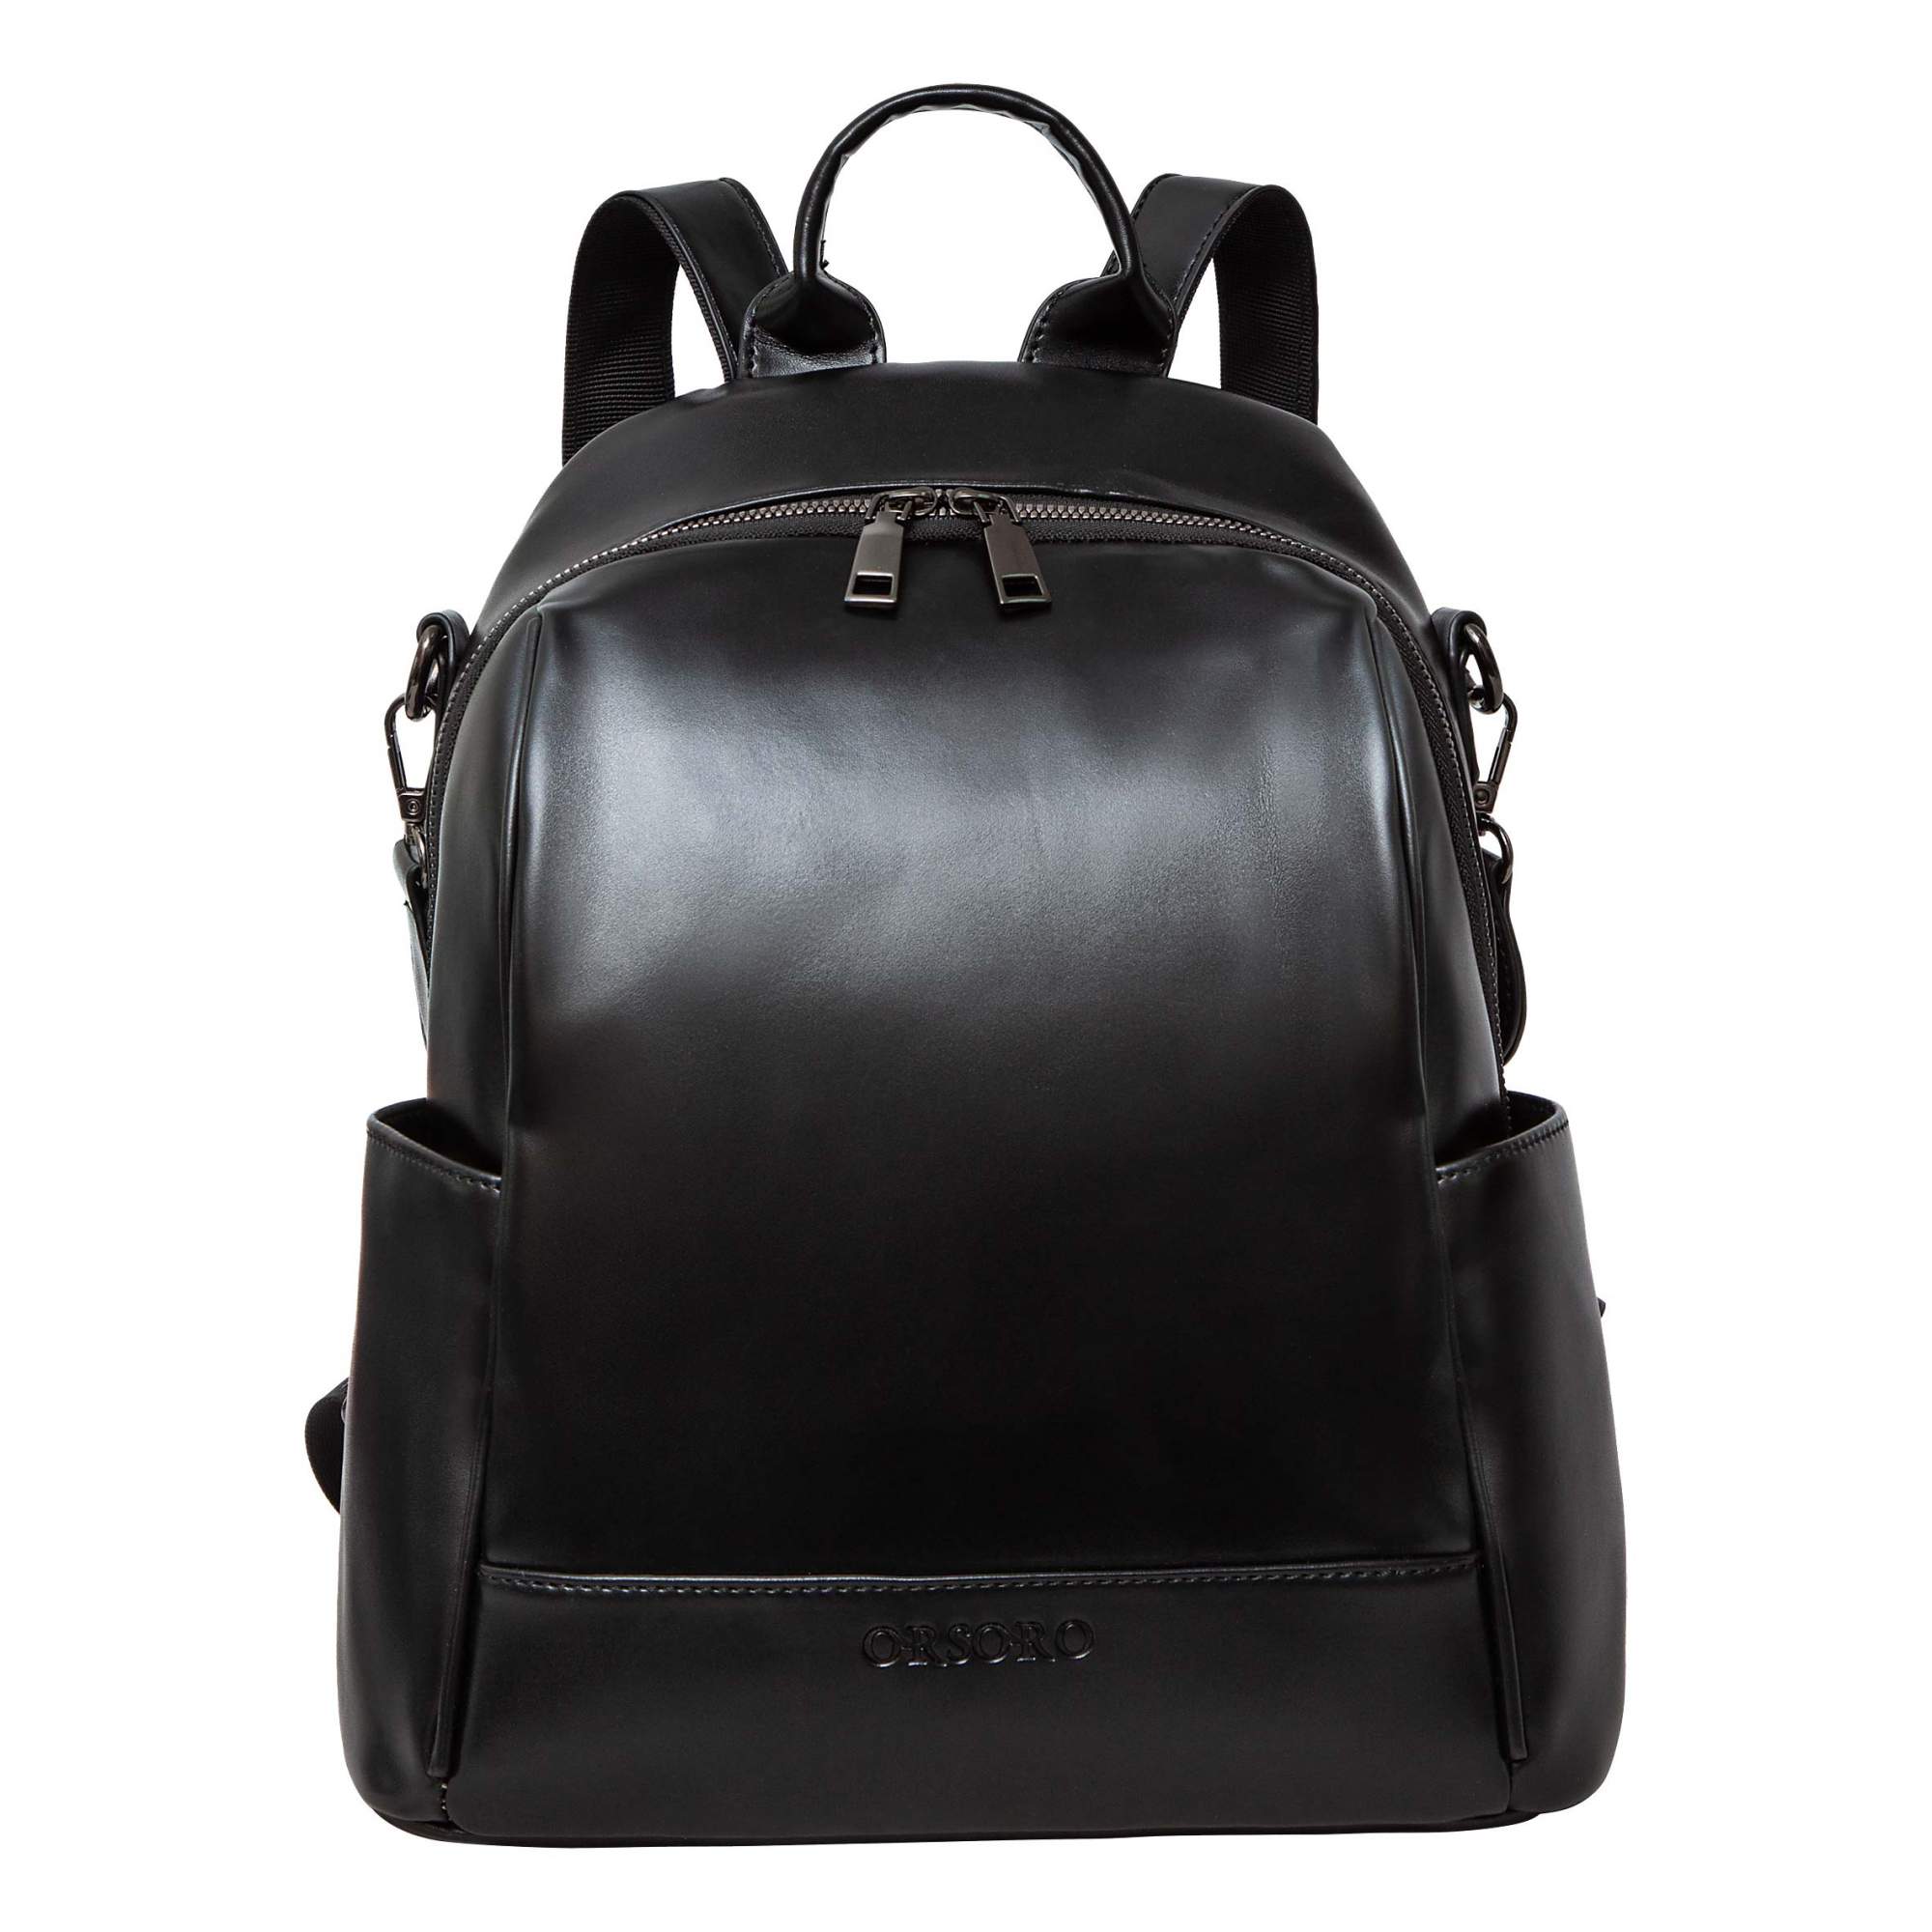 Сумка-рюкзак женская OrsOro ORW-0231 черная, 33х26х12 см - купить в Москве, цены на Мегамаркет | 600013834287